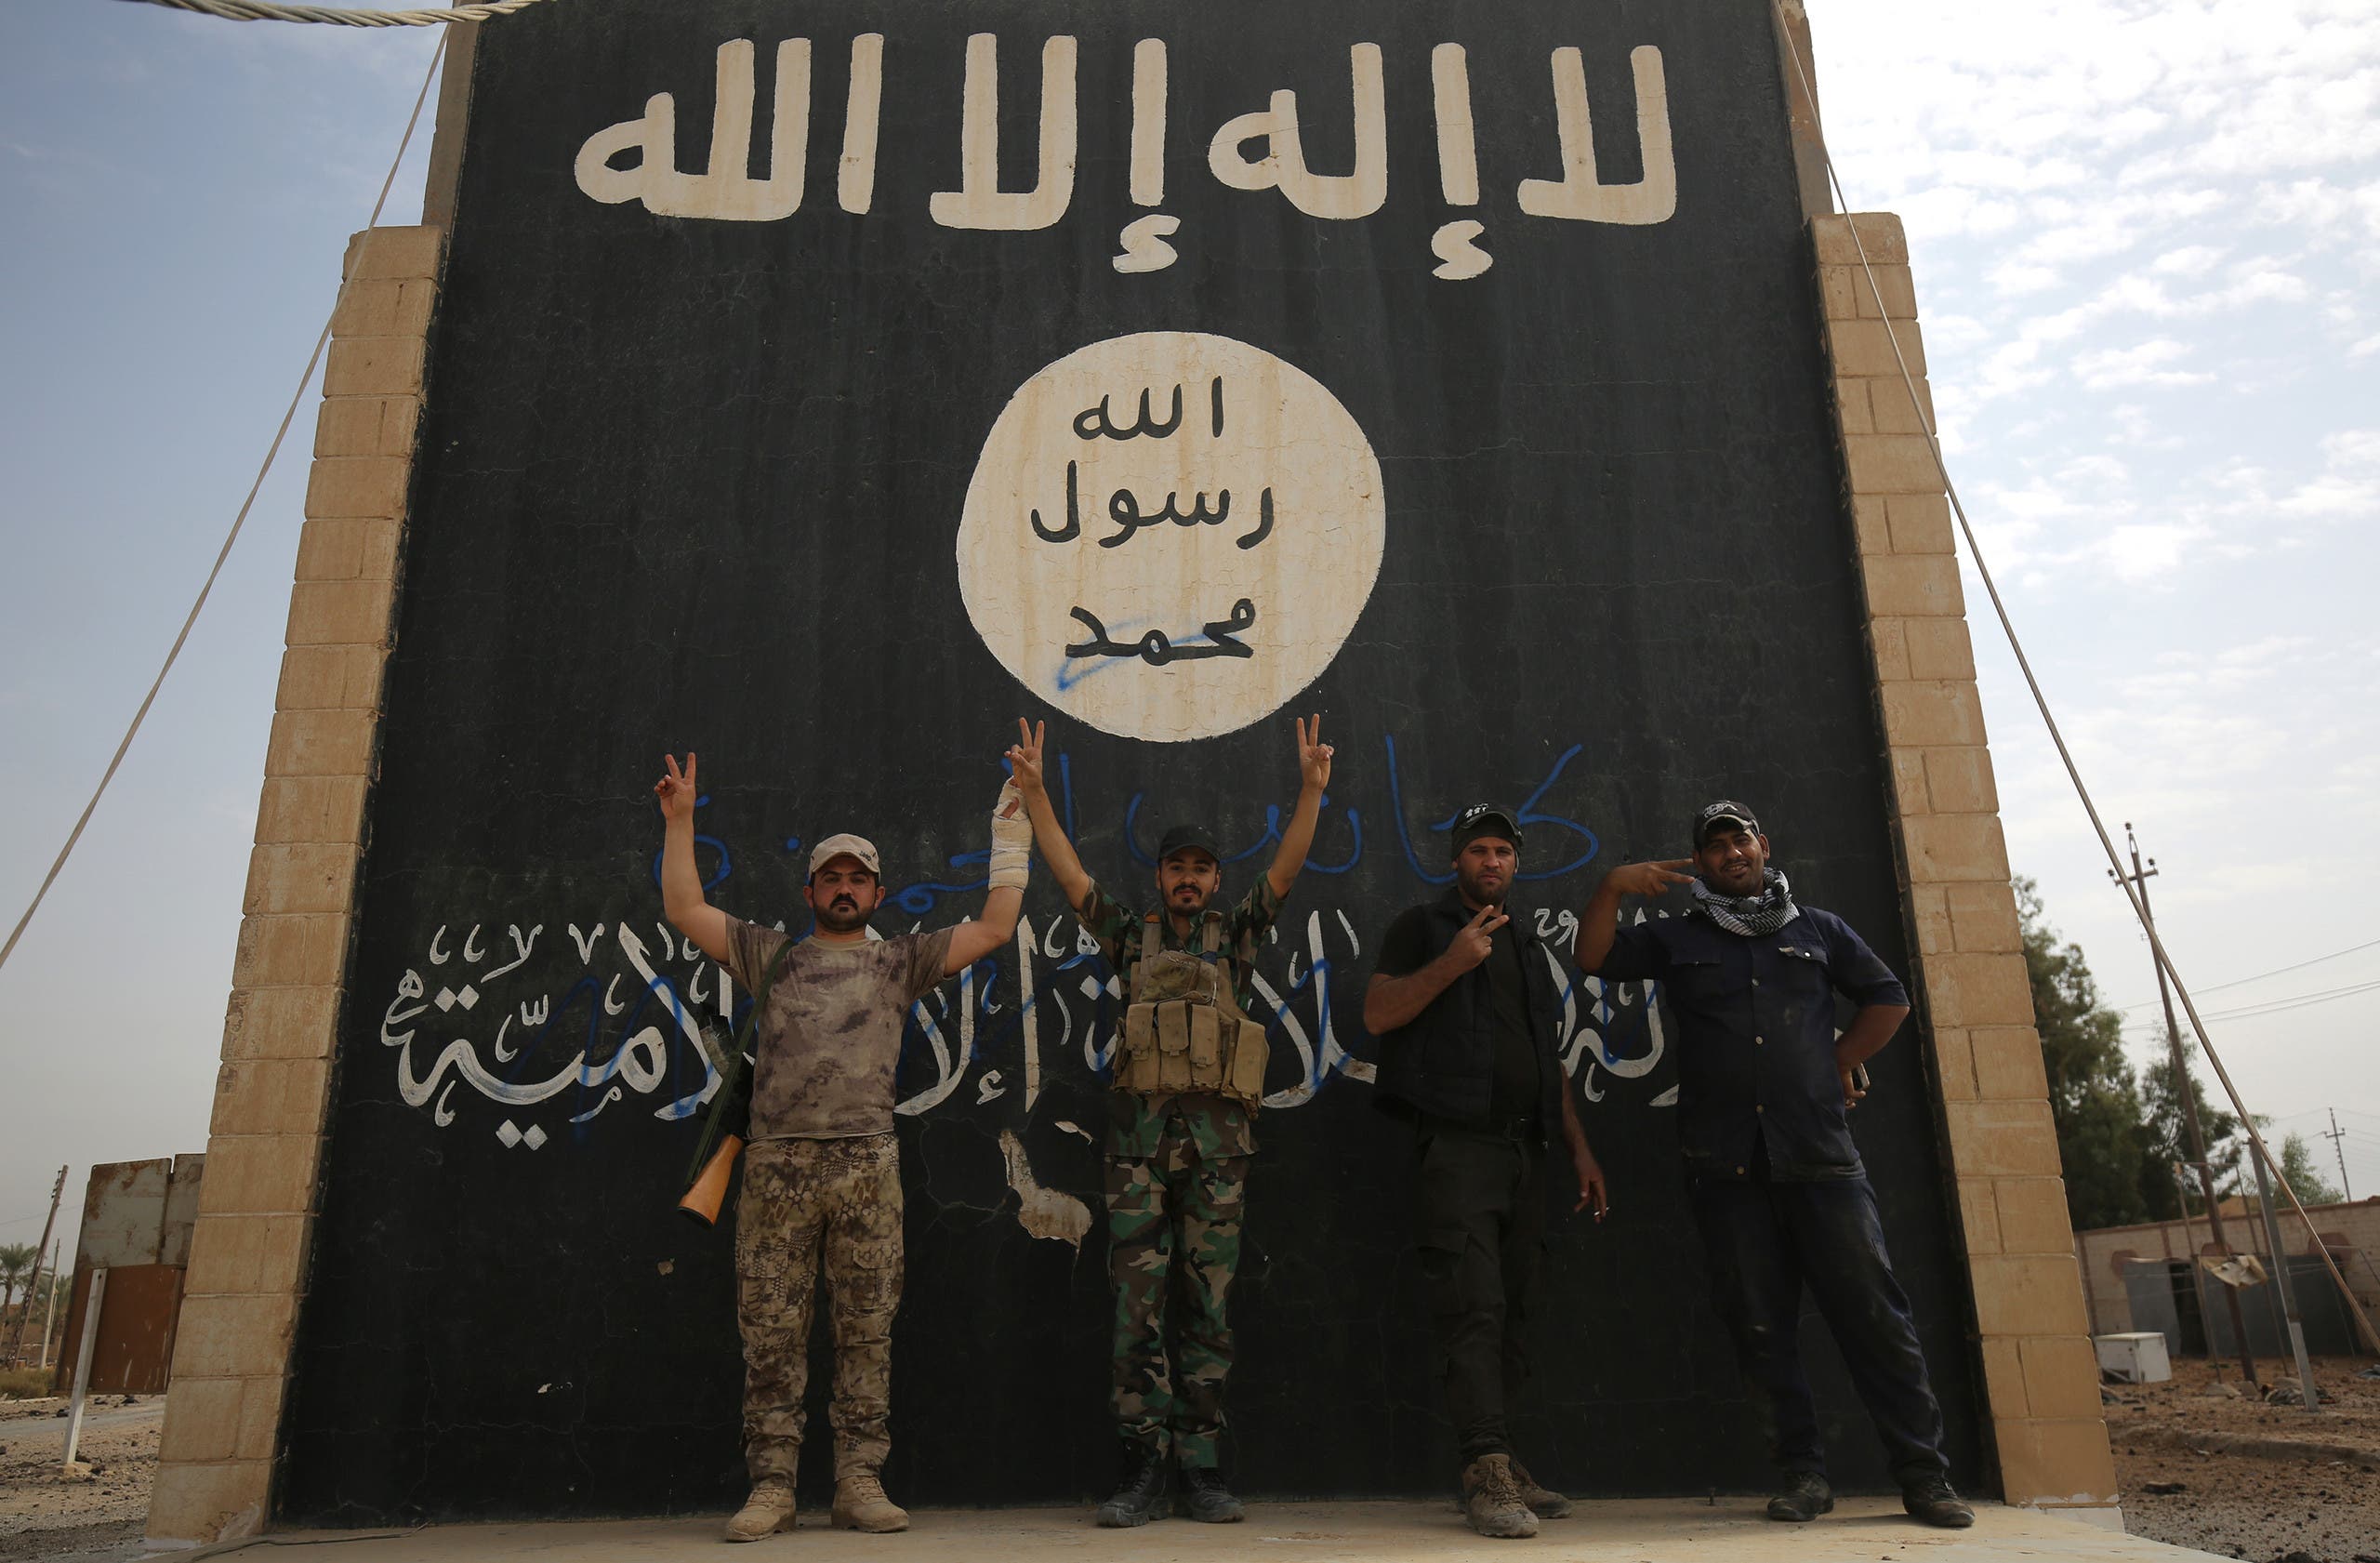     داعش در عراق (بایگانی - مطبوعات فرانسه